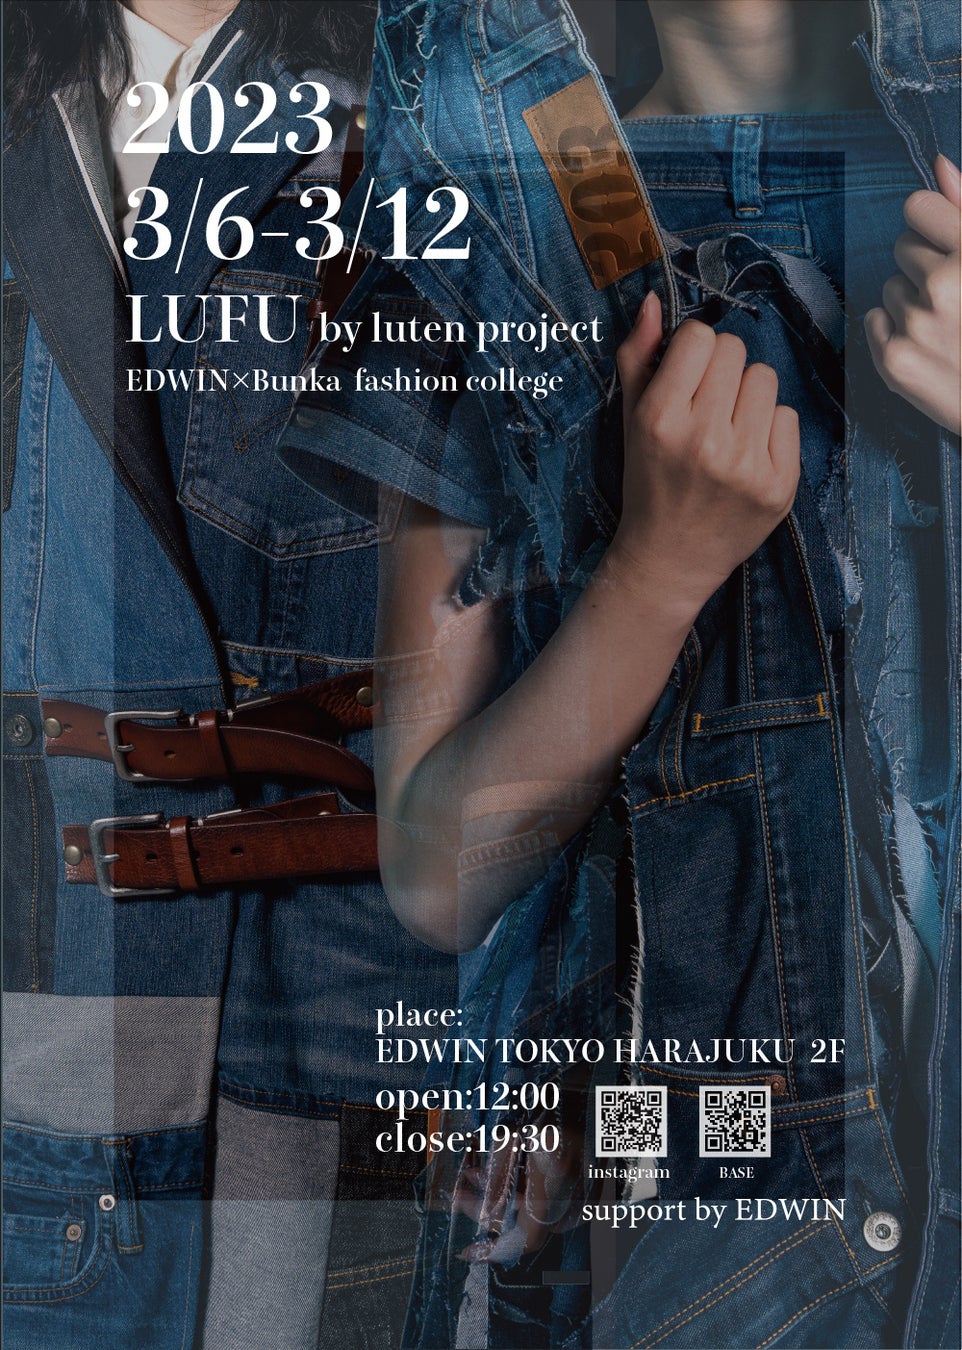 エドウインと文化服装学院によるサステイナブルな取り組み「LUTEN」。廃棄デニムを使用した学生による作品の展示・販売会を今年も開催。のサブ画像1